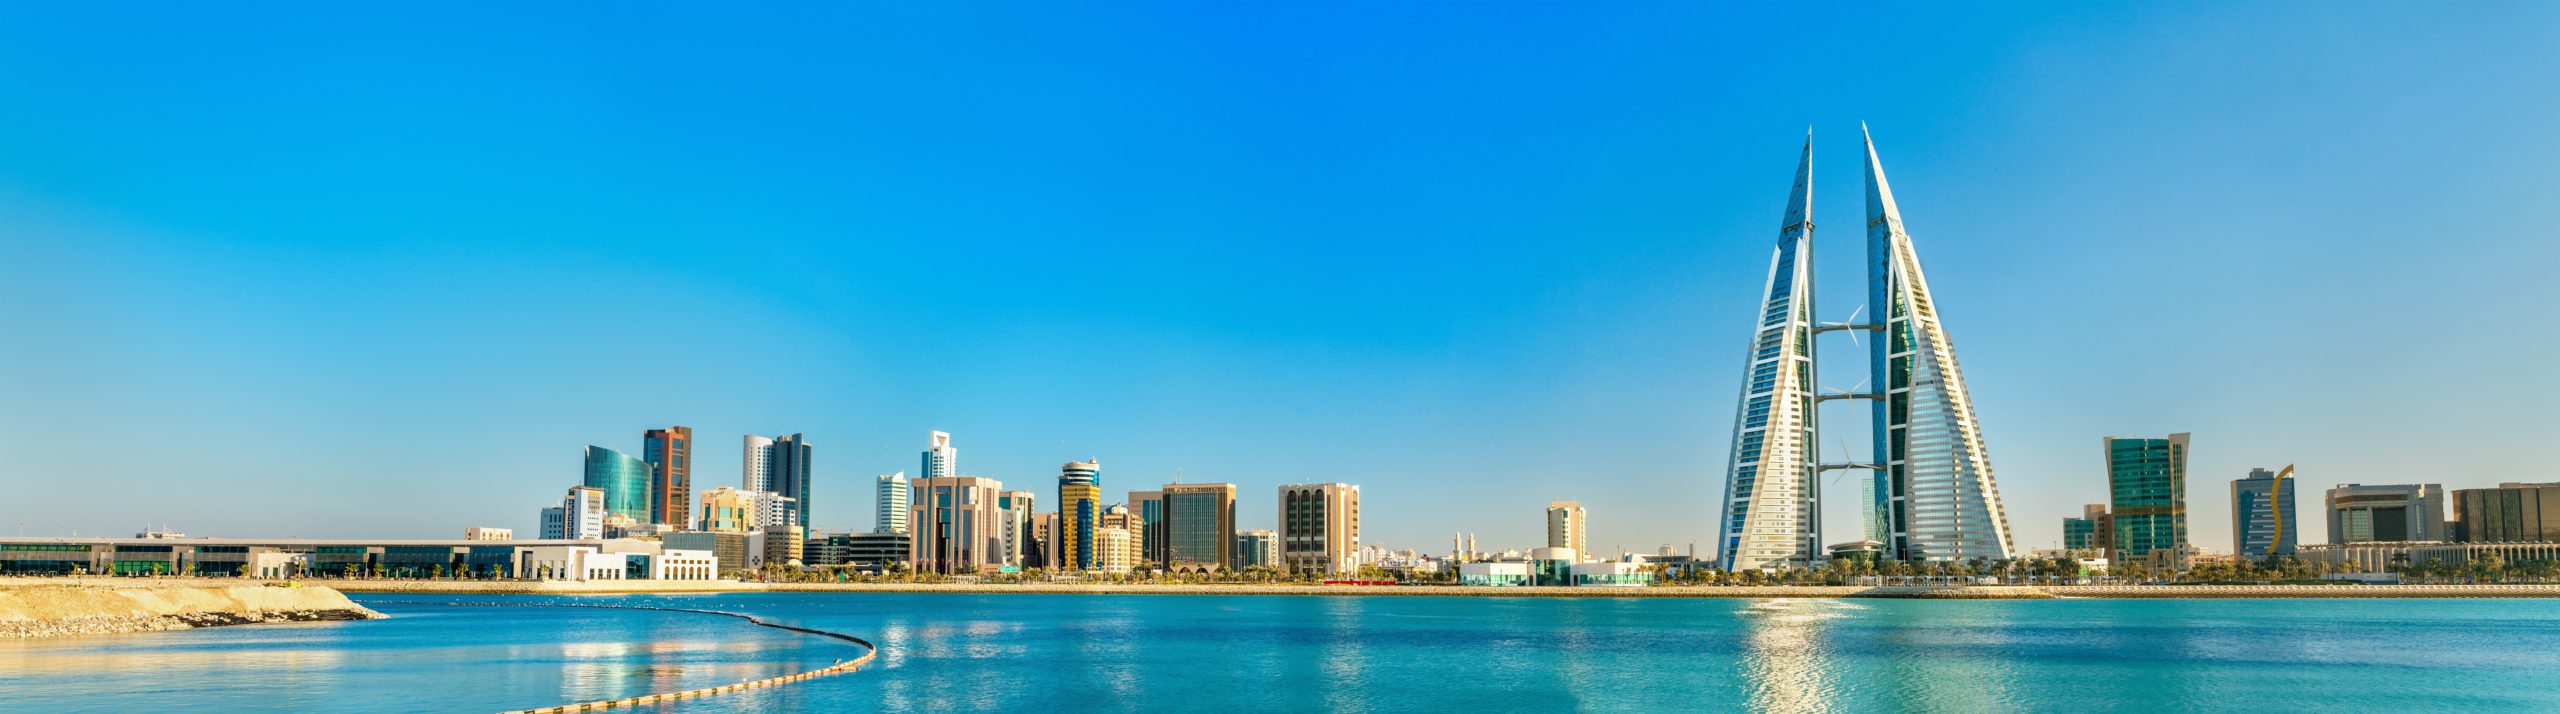 Bahrain [Shutterstock]